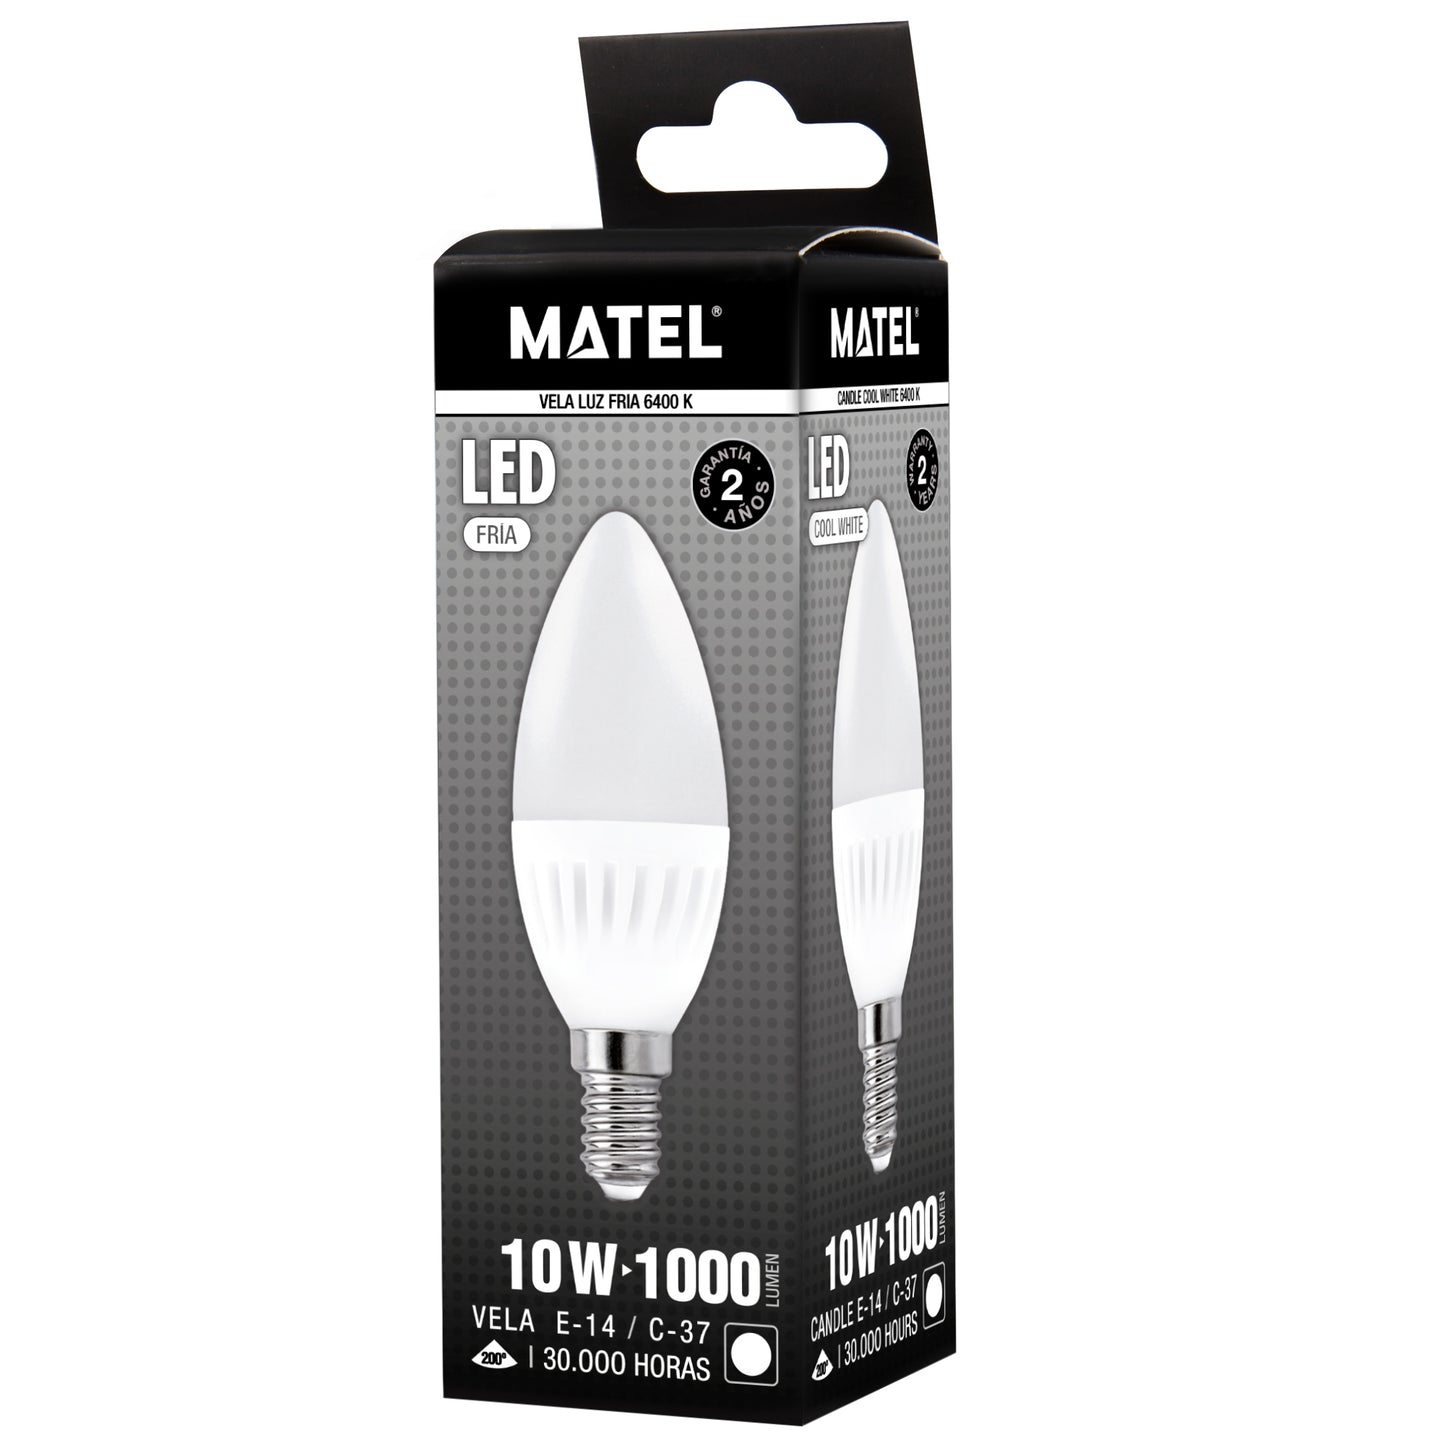 MATEL E14 10W CANDLE LED LAMP 